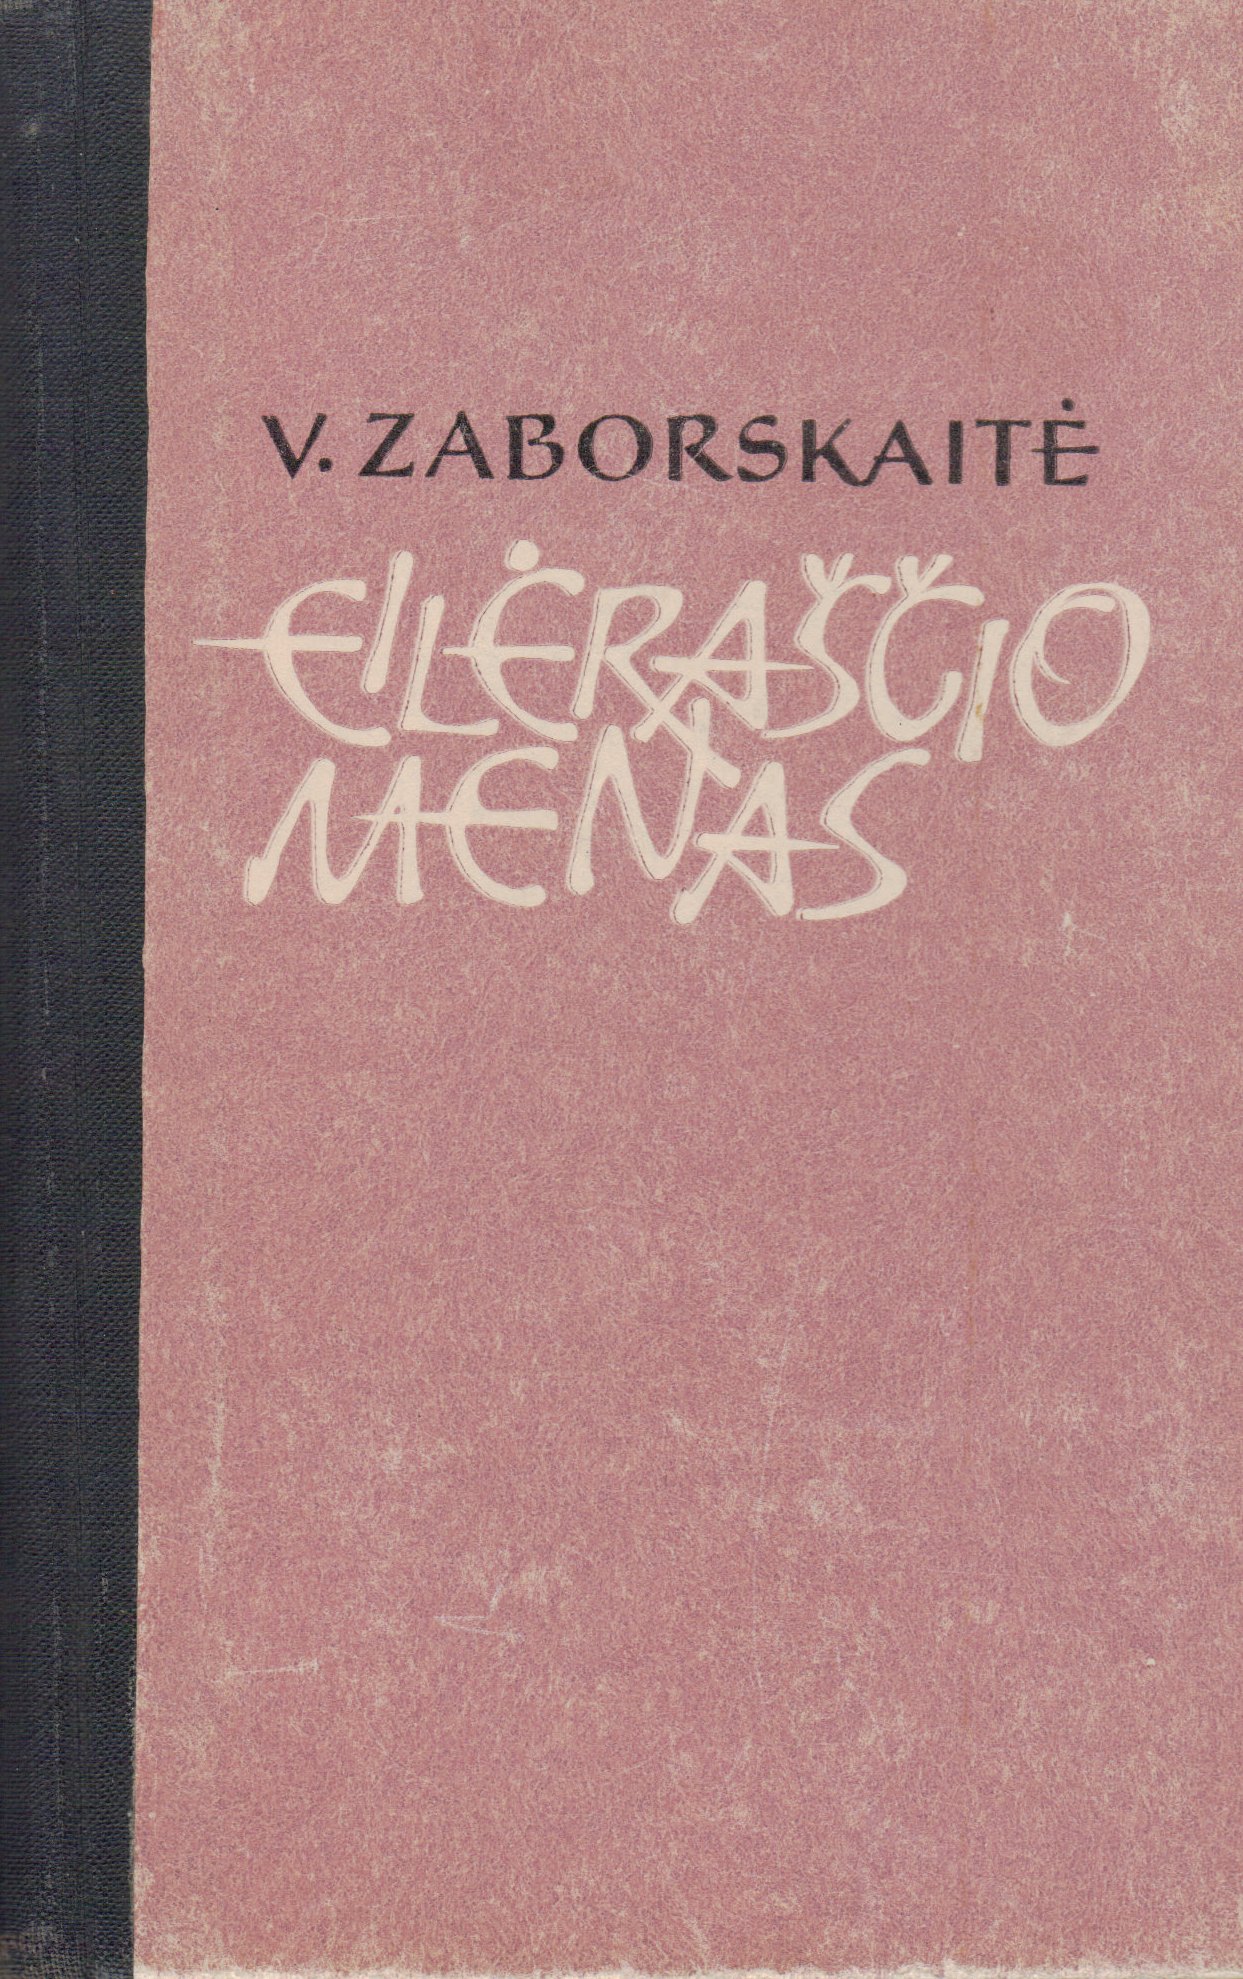 V. Zaborskaitė. Eilėraščio menas. V., 1965. MLLM 54942/K2 2680